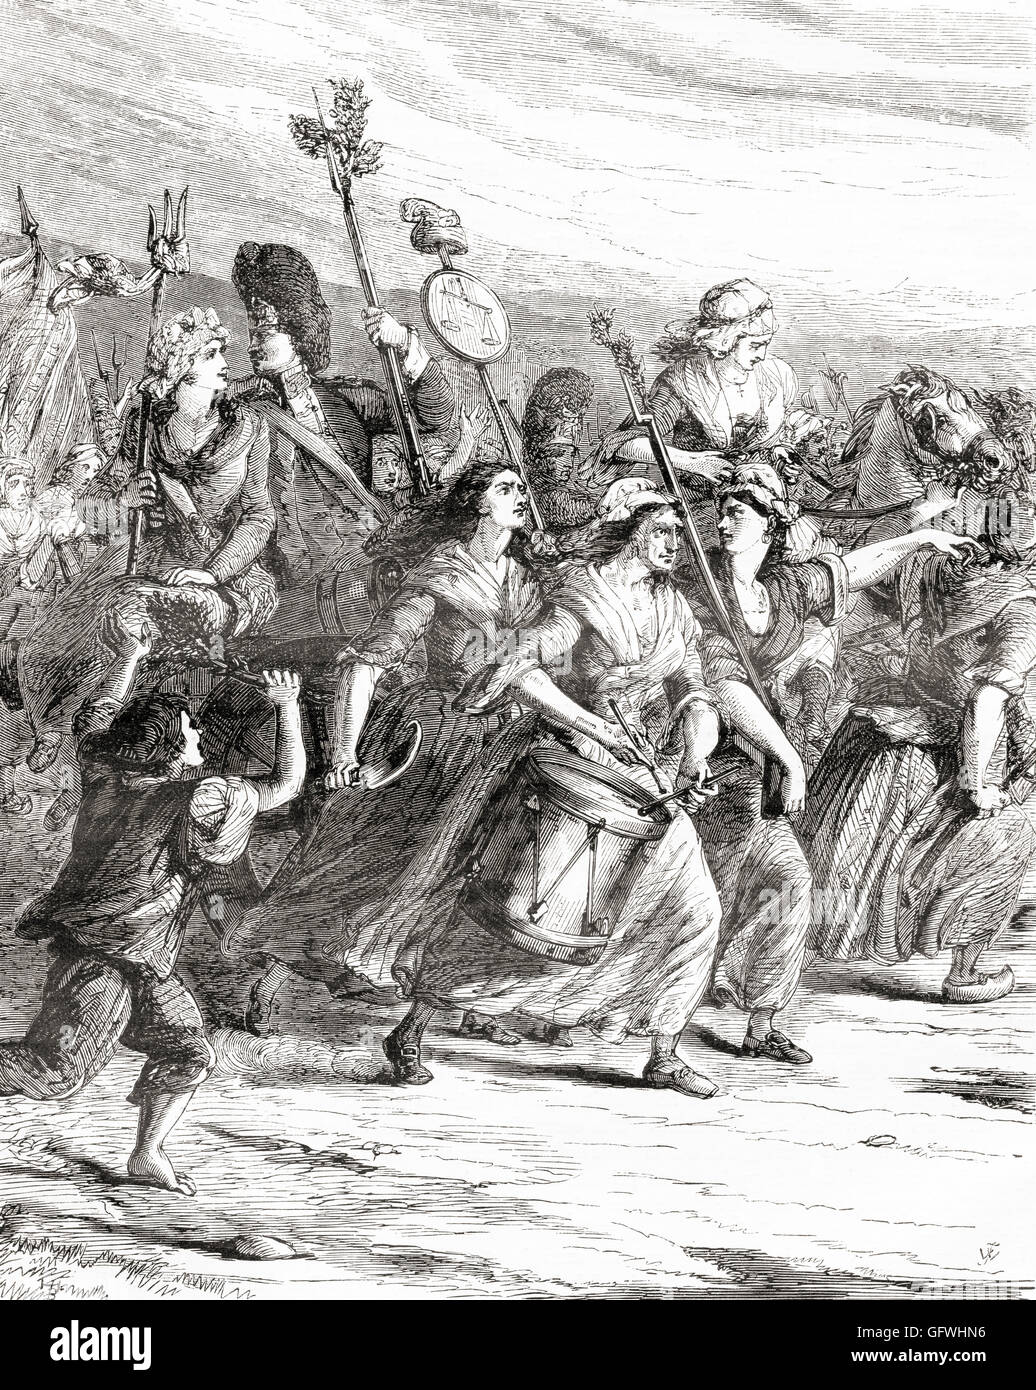 März der Poissardes oder Marktfrauen nach Versailles am 5. Oktober 1789 während der französischen Revolution, auf Nachfrage Brot und Gerechtigkeit. Stockfoto